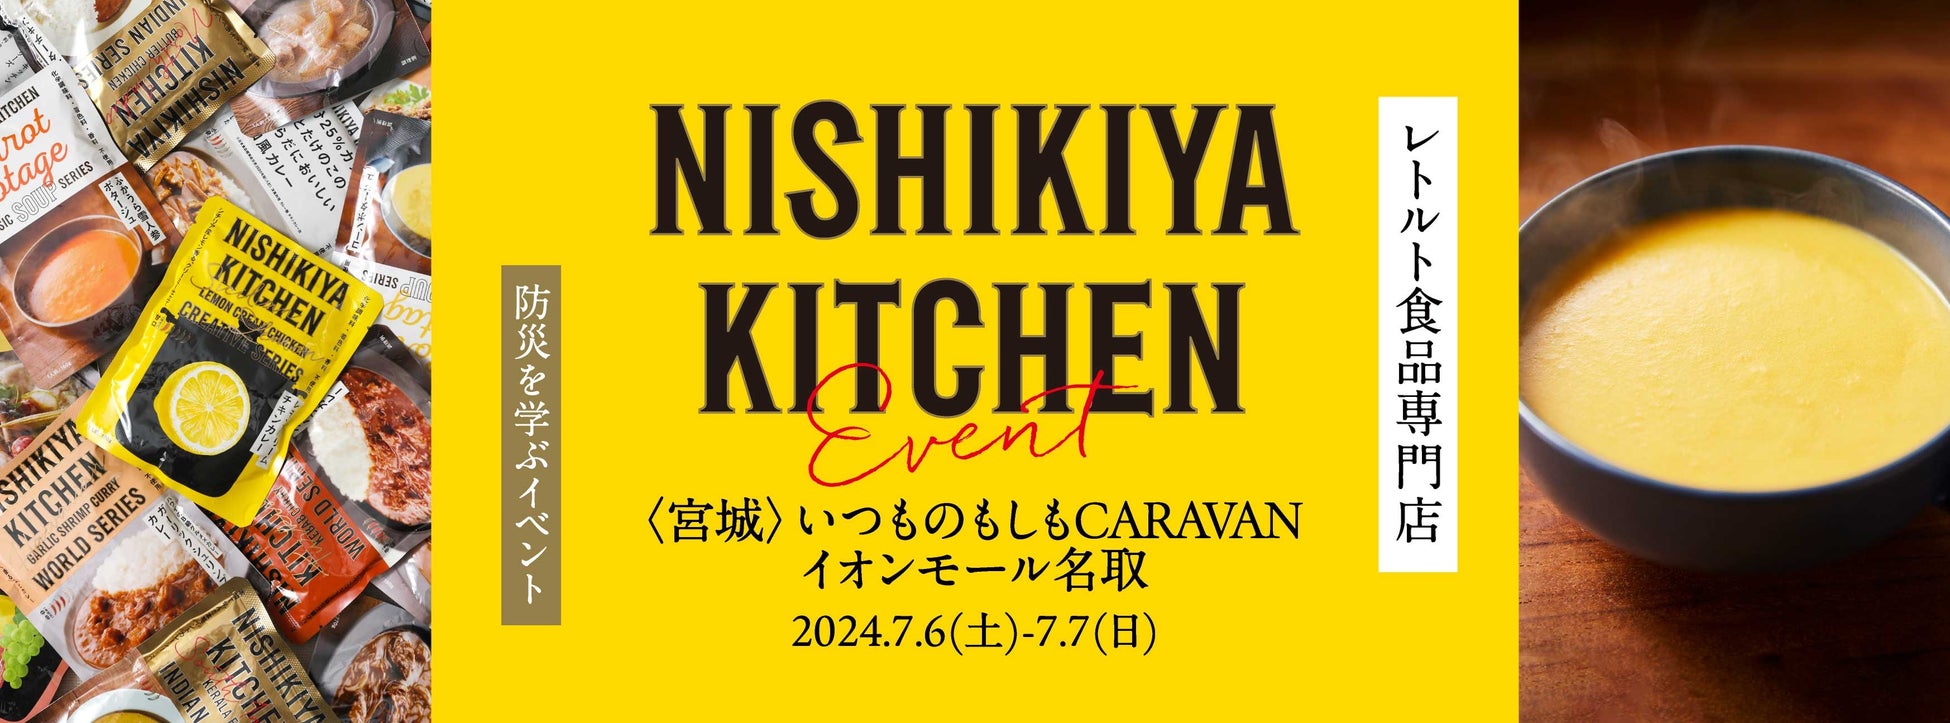 レトルト食品専門店のニシキヤキッチンが、良品計画・イオンモール共催防災イベント「いつものもしもCARAVAN」参加決定